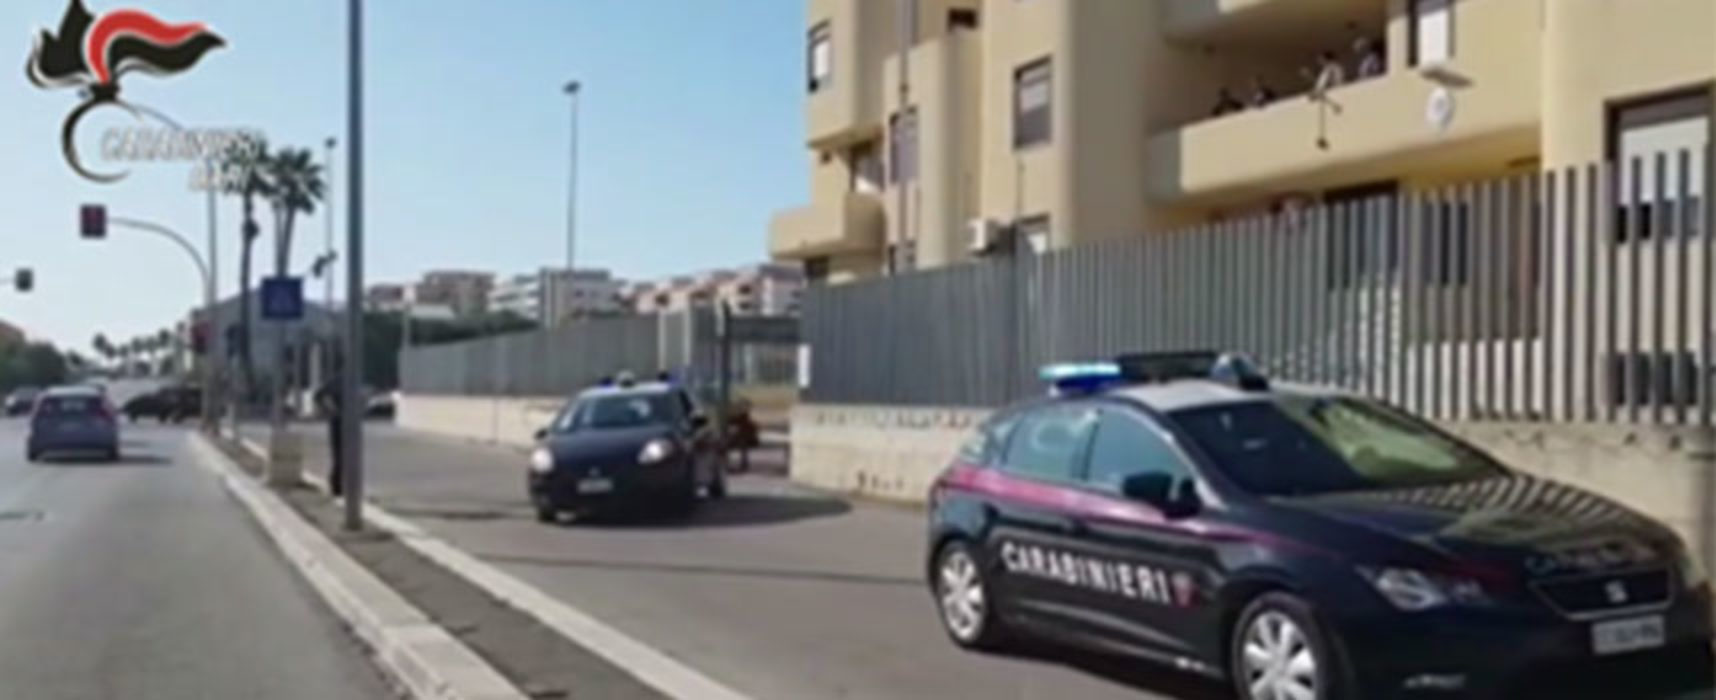 Dopo inseguimento Carabinieri arrestano biscegliese che circolava con auto rubata